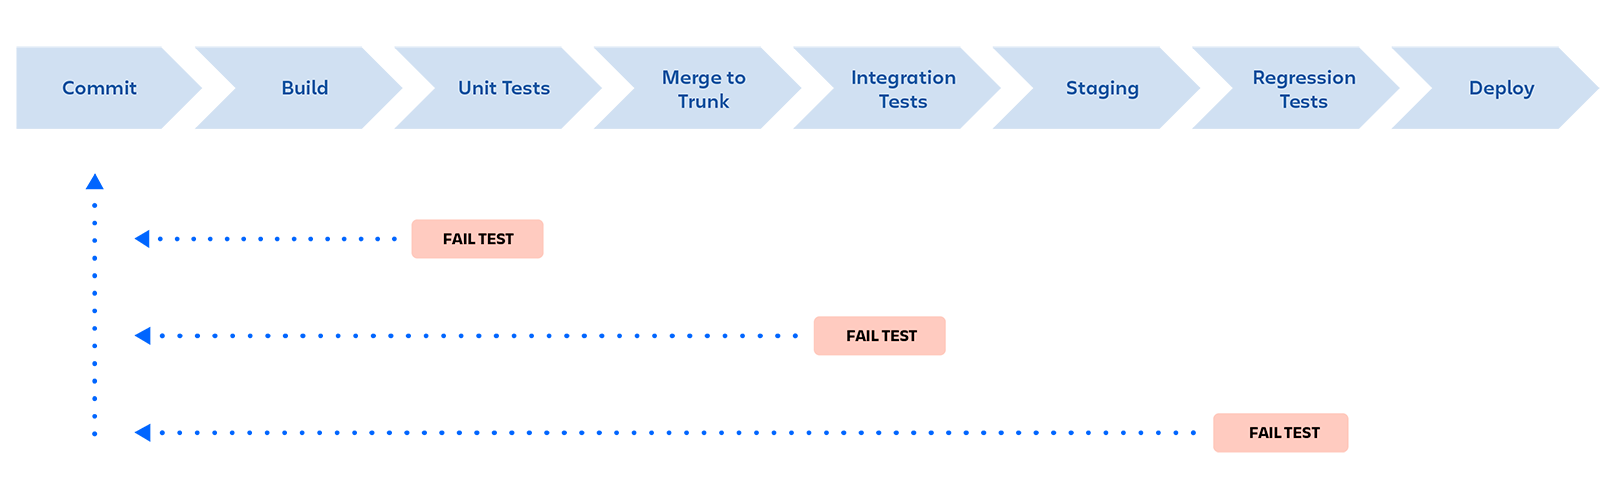 Pipeline DevOps: dodawanie commitów, kompilowanie, testy jednostkowe, scalanie do gałęzi głównej, testy integracyjne, środowisko przejściowe, testy regresyjne, wdrażanie. Pipeline jest zatrzymywany, jeśli testy zakończą się niepowodzeniem na dowolnym etapie, a informacje zwrotne są dostarczane do programisty.